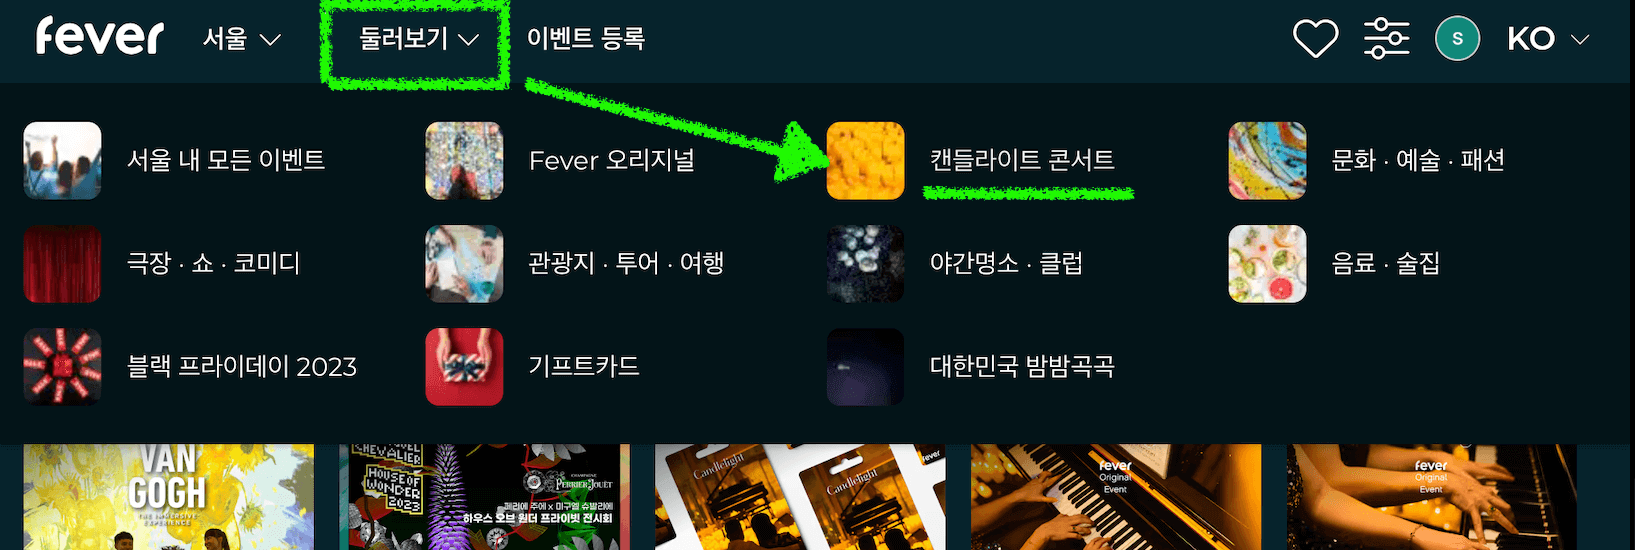 Fever 서울 지역 캔들라이트 콘서트 검색